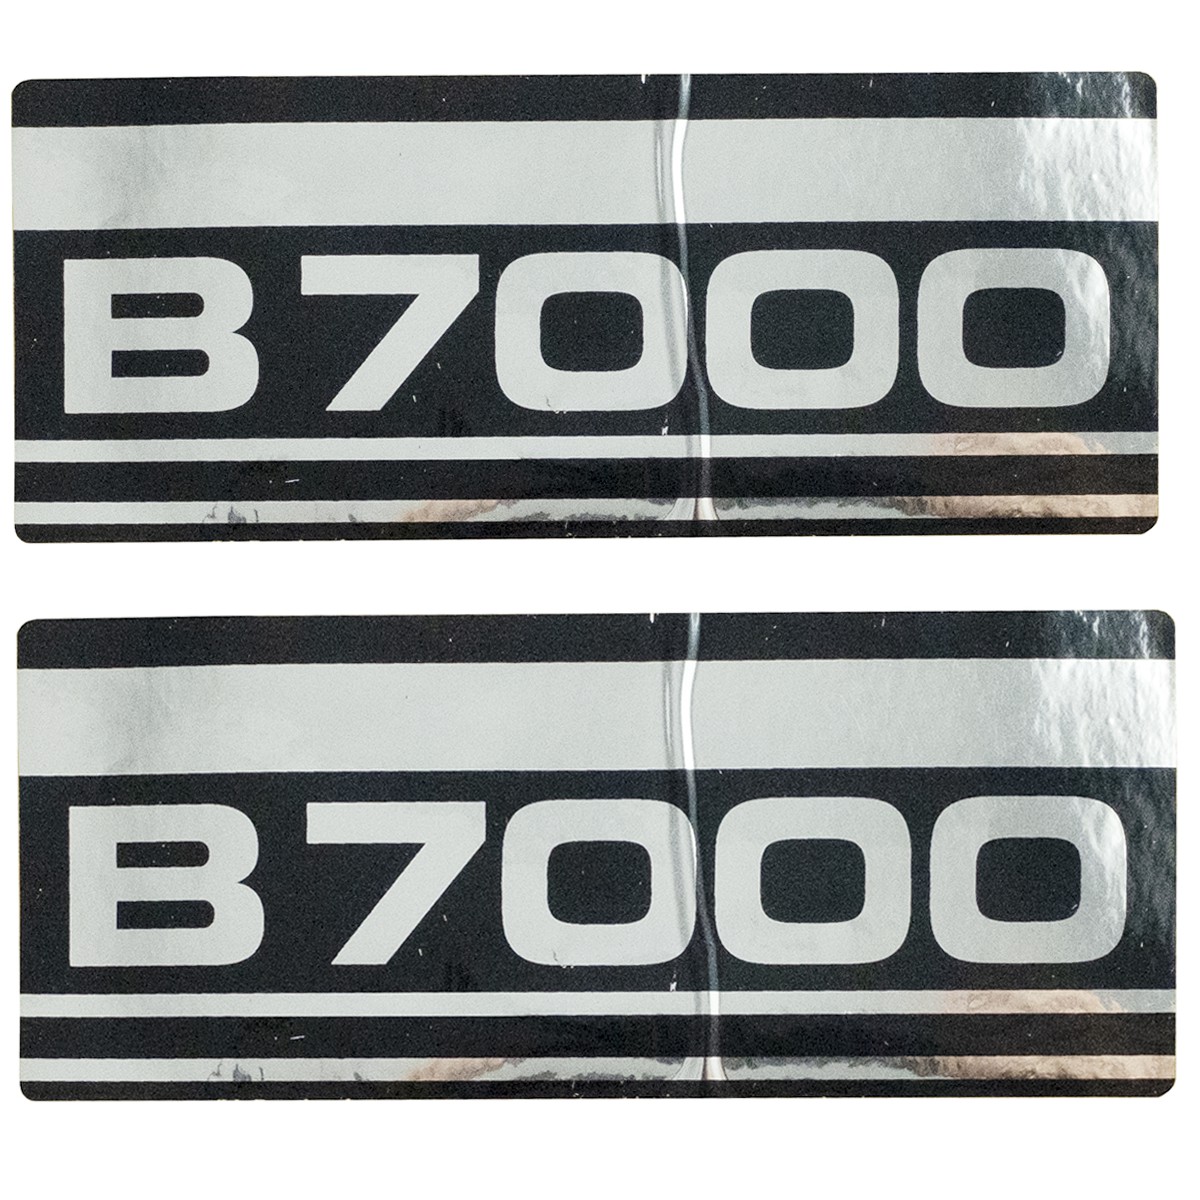 Kubota B7000 stickers